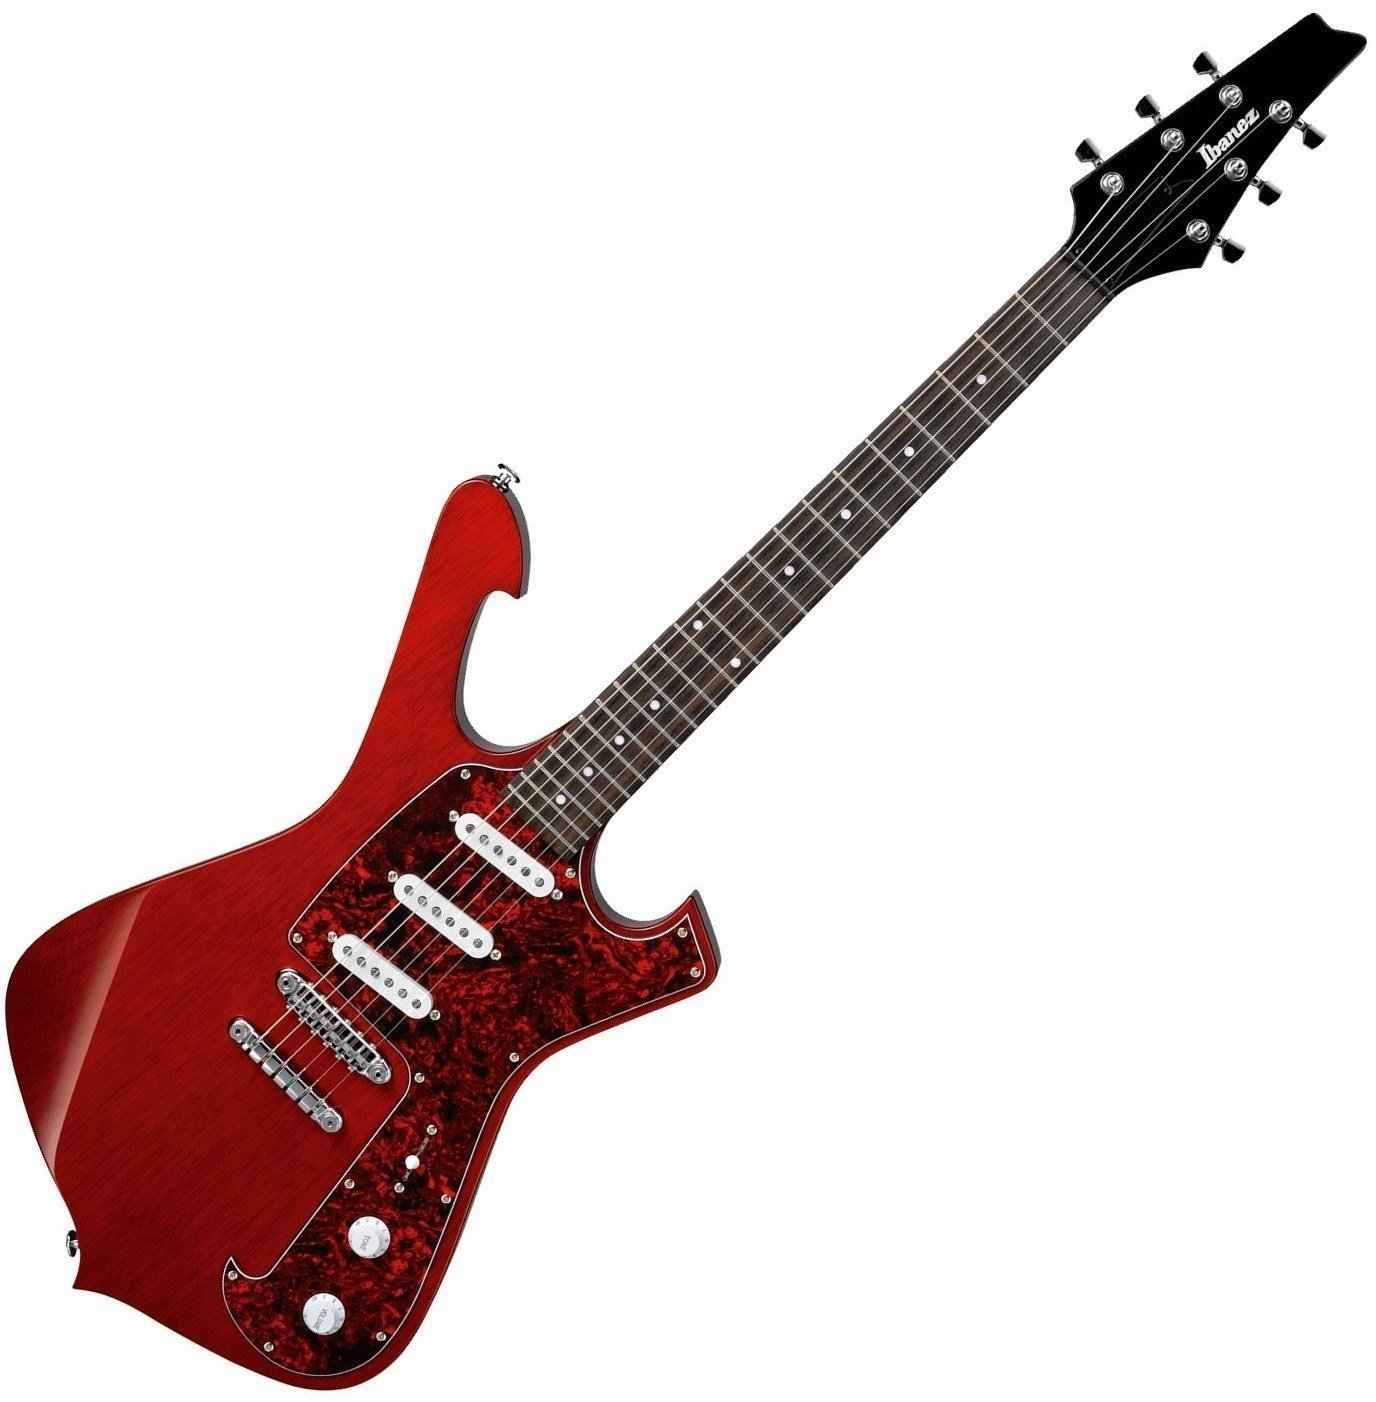 Signatur elektrisk guitar Ibanez FRM 100 Transparent Red